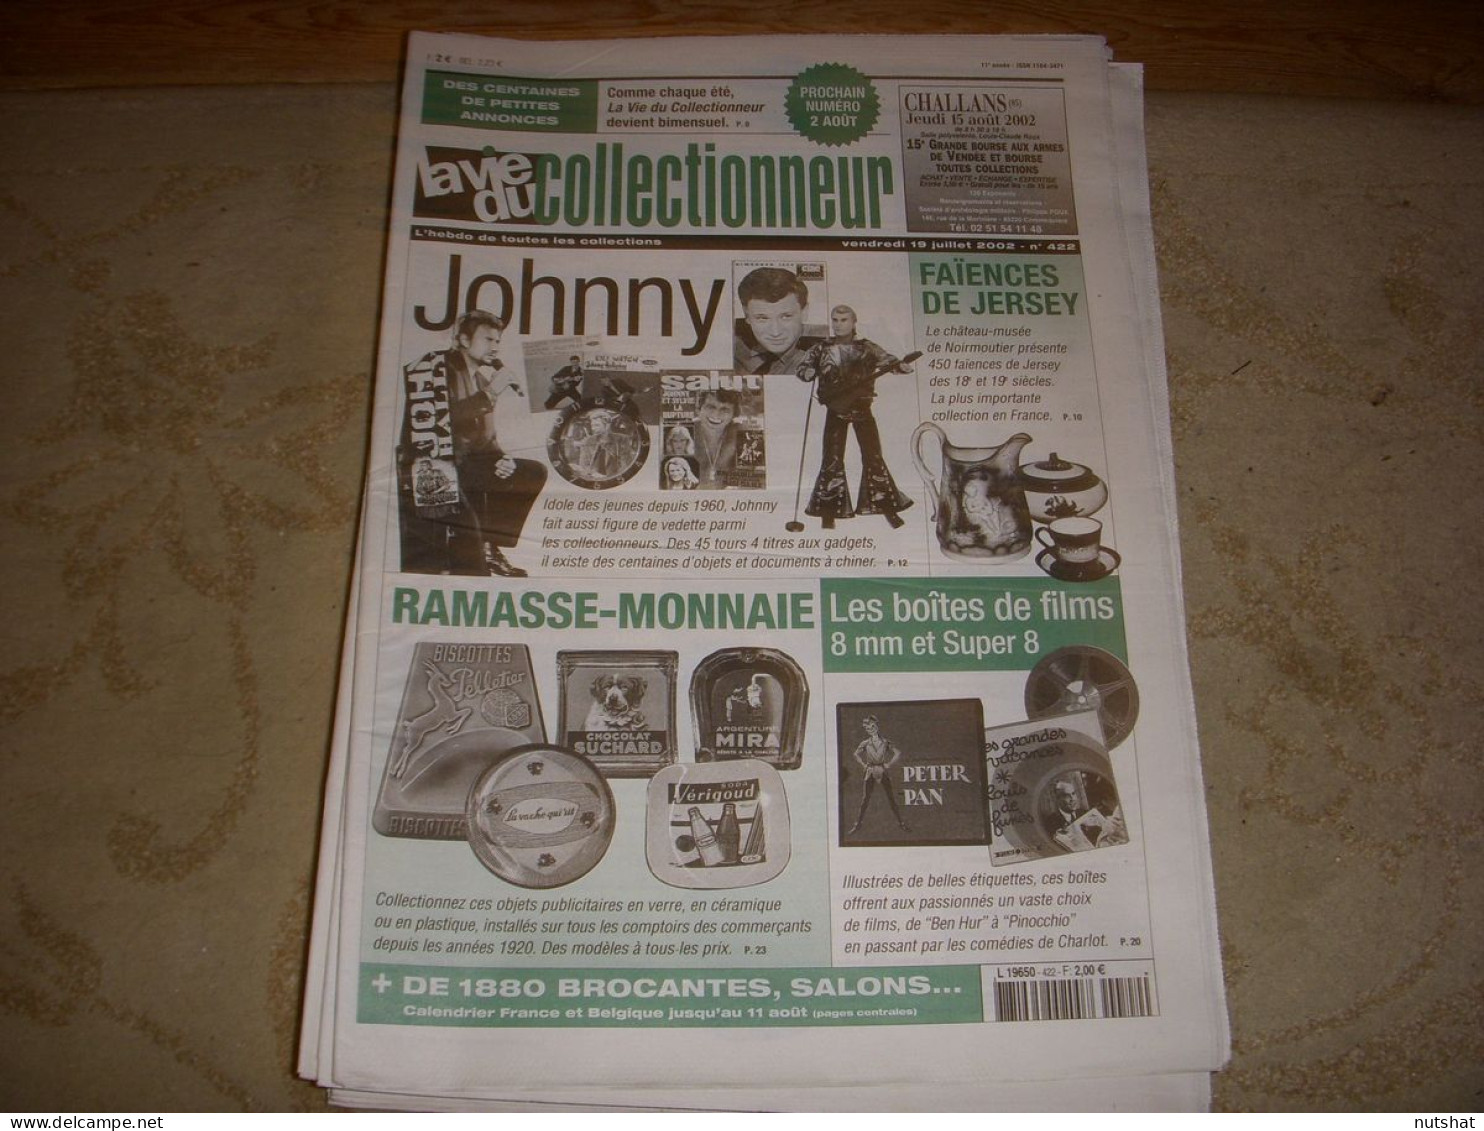 LVC VIE Du COLLECTIONNEUR 422 07.2002 JOHNNY HALLIDAY BOITES De FILMS 8mm  - Brocantes & Collections